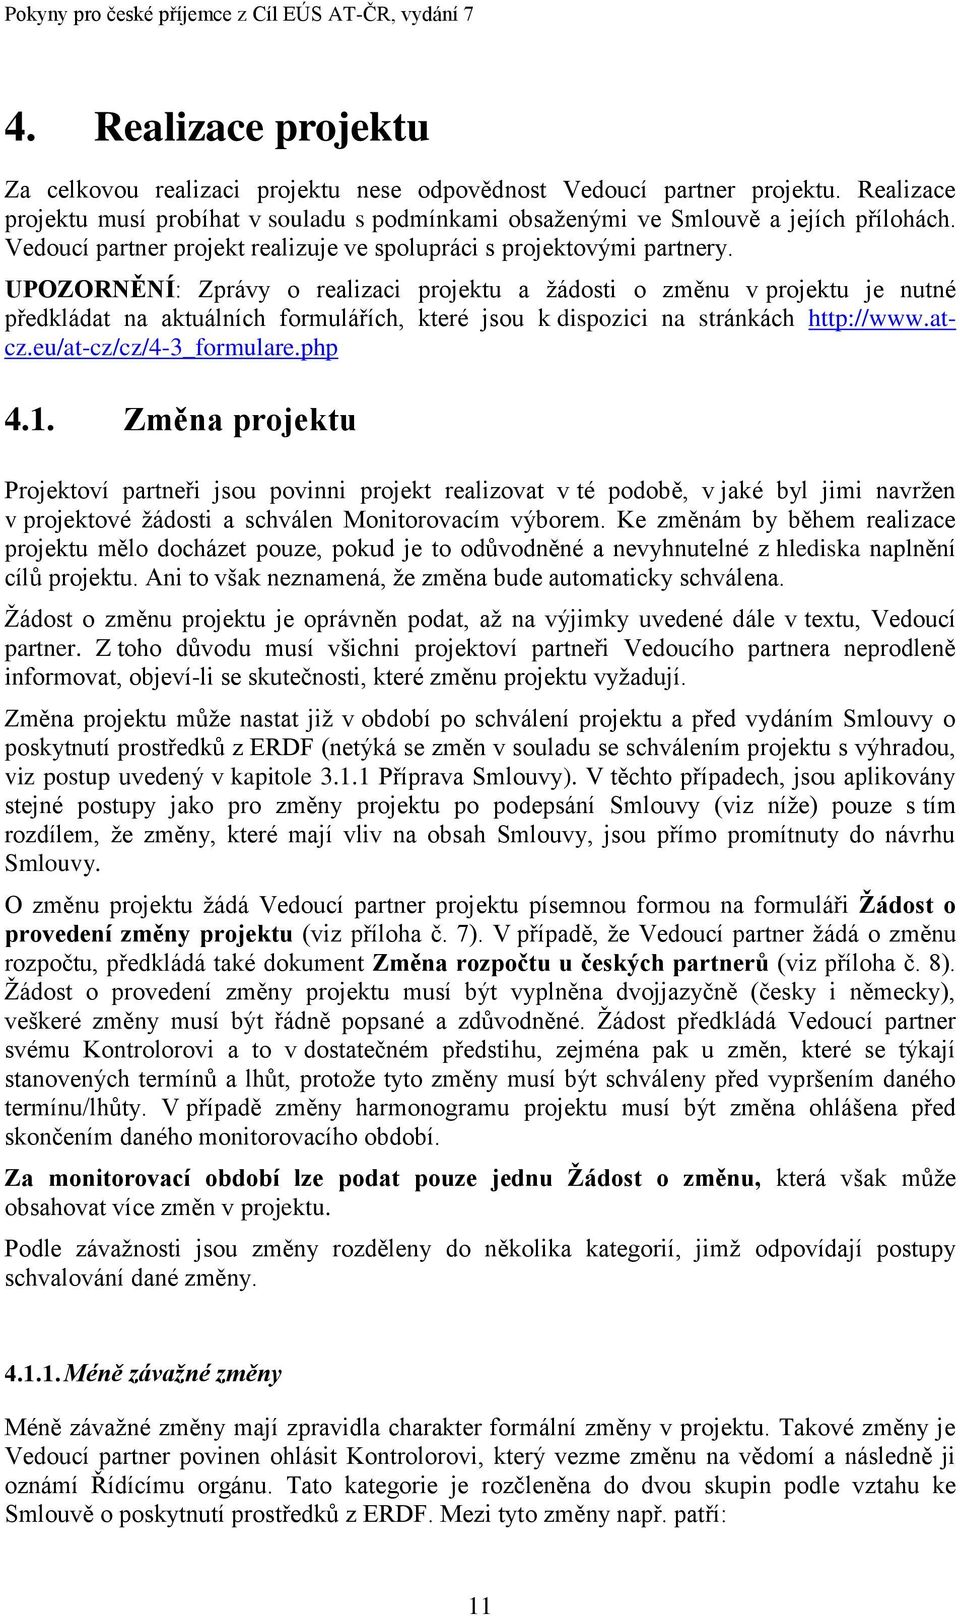 UPOZORNĚNÍ: Zprávy o realizaci projektu a žádosti o změnu v projektu je nutné předkládat na aktuálních formulářích, které jsou k dispozici na stránkách http://www.atcz.eu/at-cz/cz/4-3_formulare.php 4.